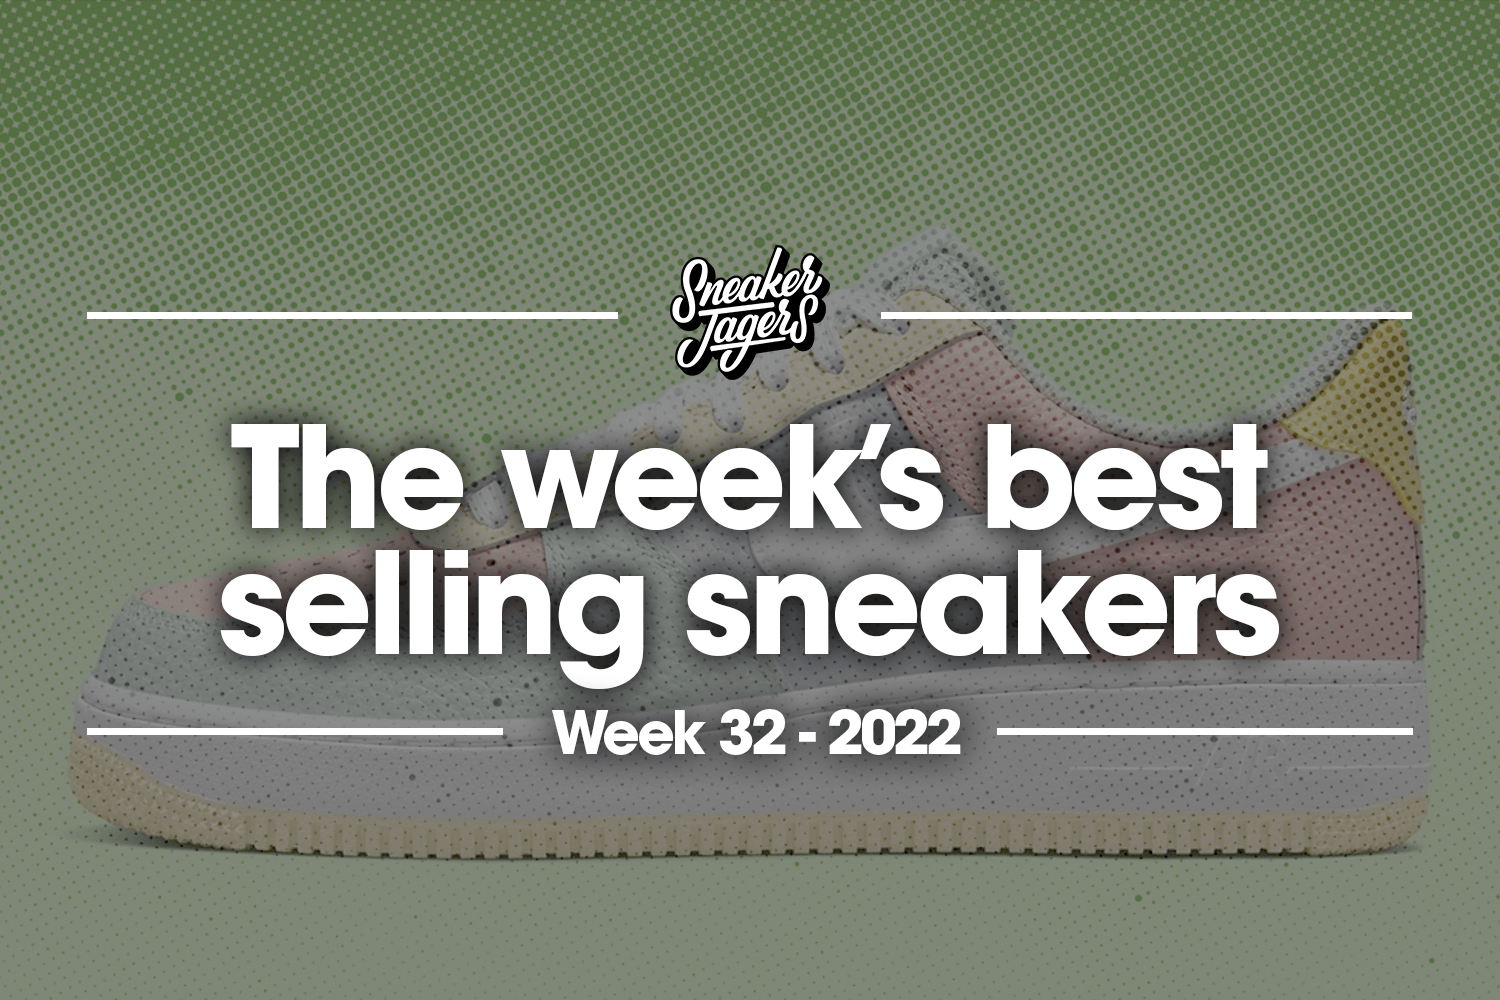 The 5 best-selling sneakers of week 32